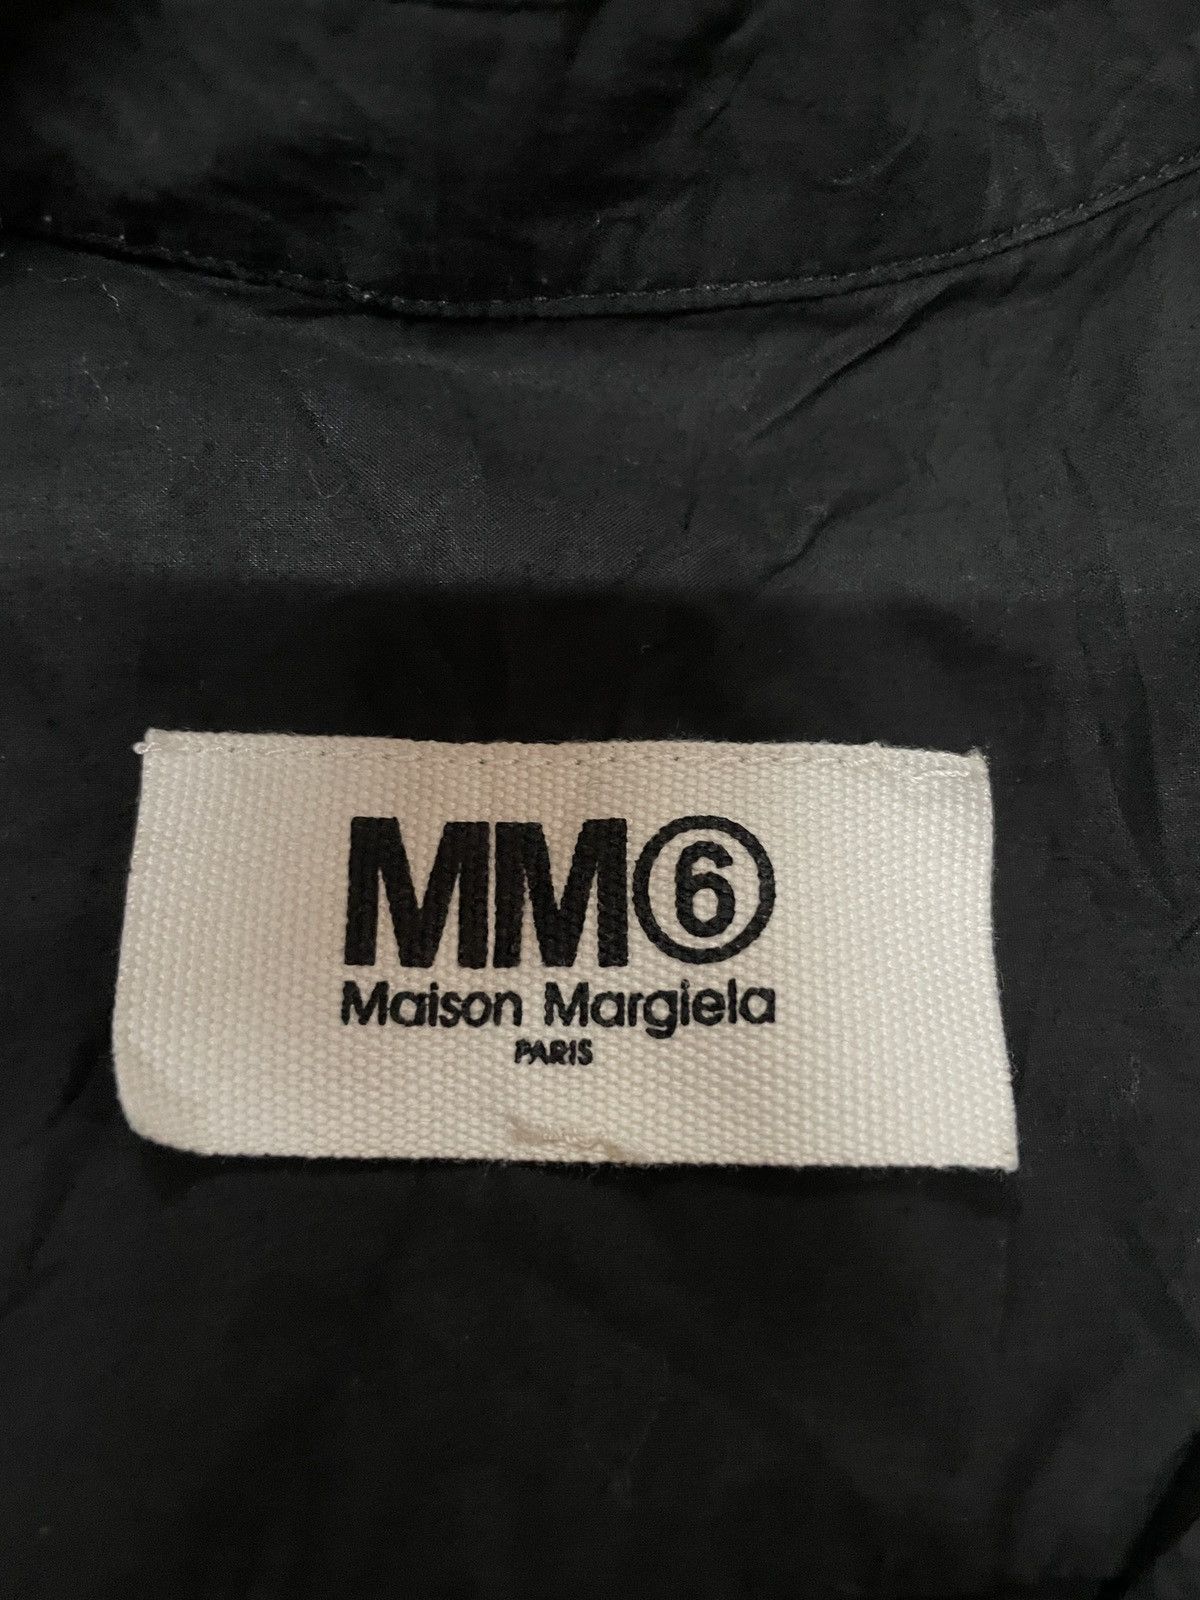 Maison Margiela Maison Margiela MM6 Paris 2017 collection